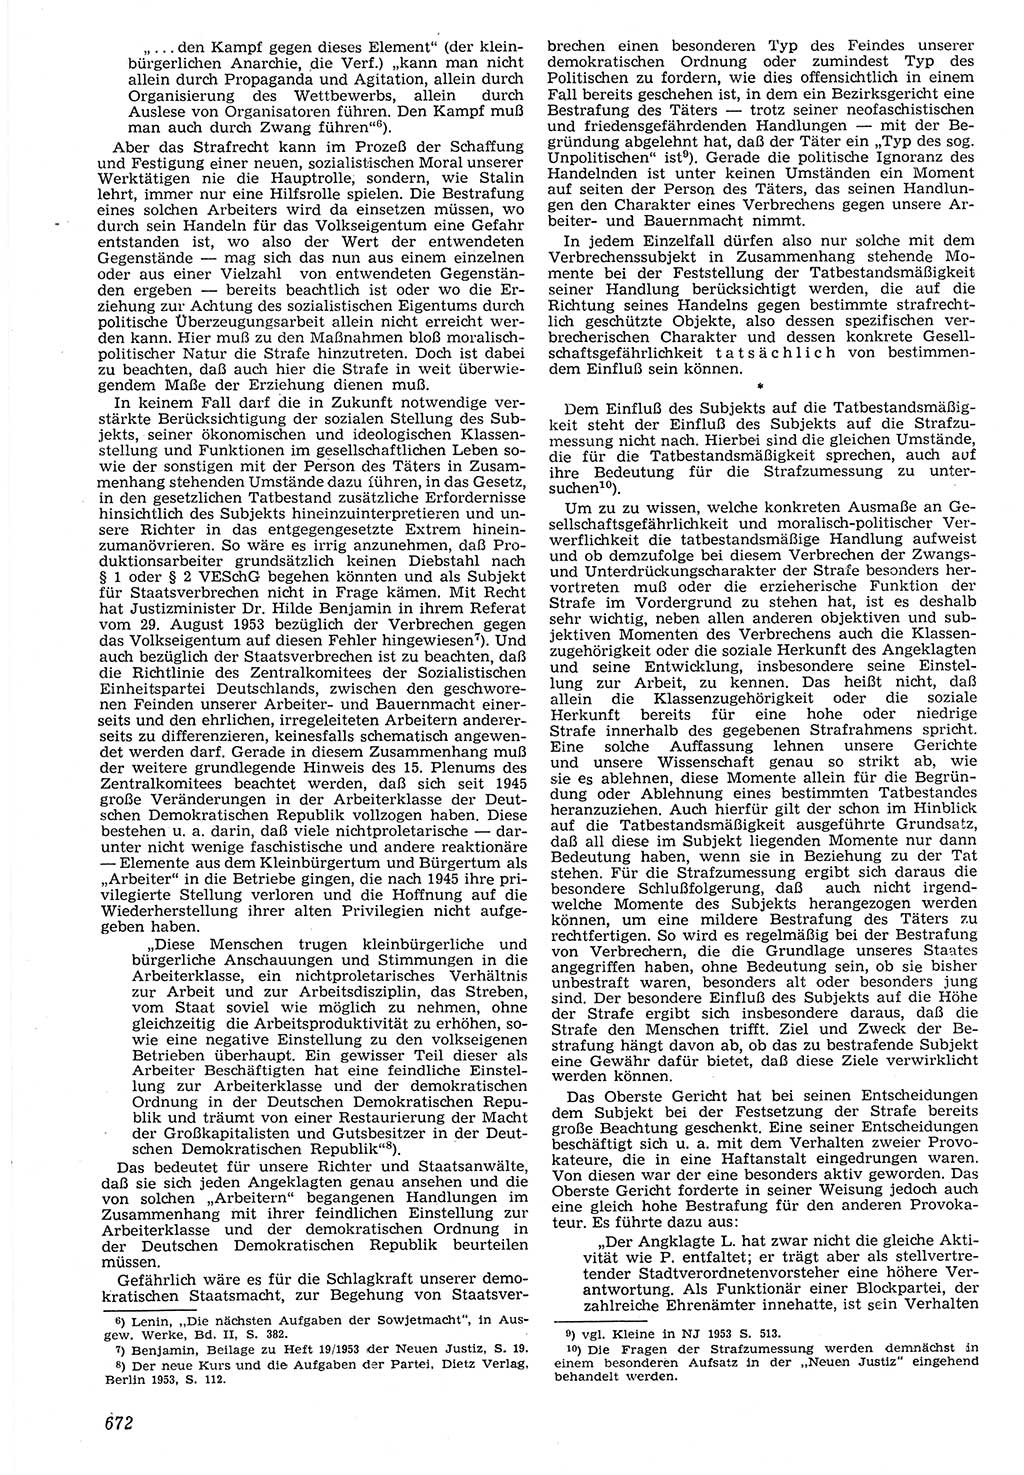 Neue Justiz (NJ), Zeitschrift für Recht und Rechtswissenschaft [Deutsche Demokratische Republik (DDR)], 7. Jahrgang 1953, Seite 672 (NJ DDR 1953, S. 672)